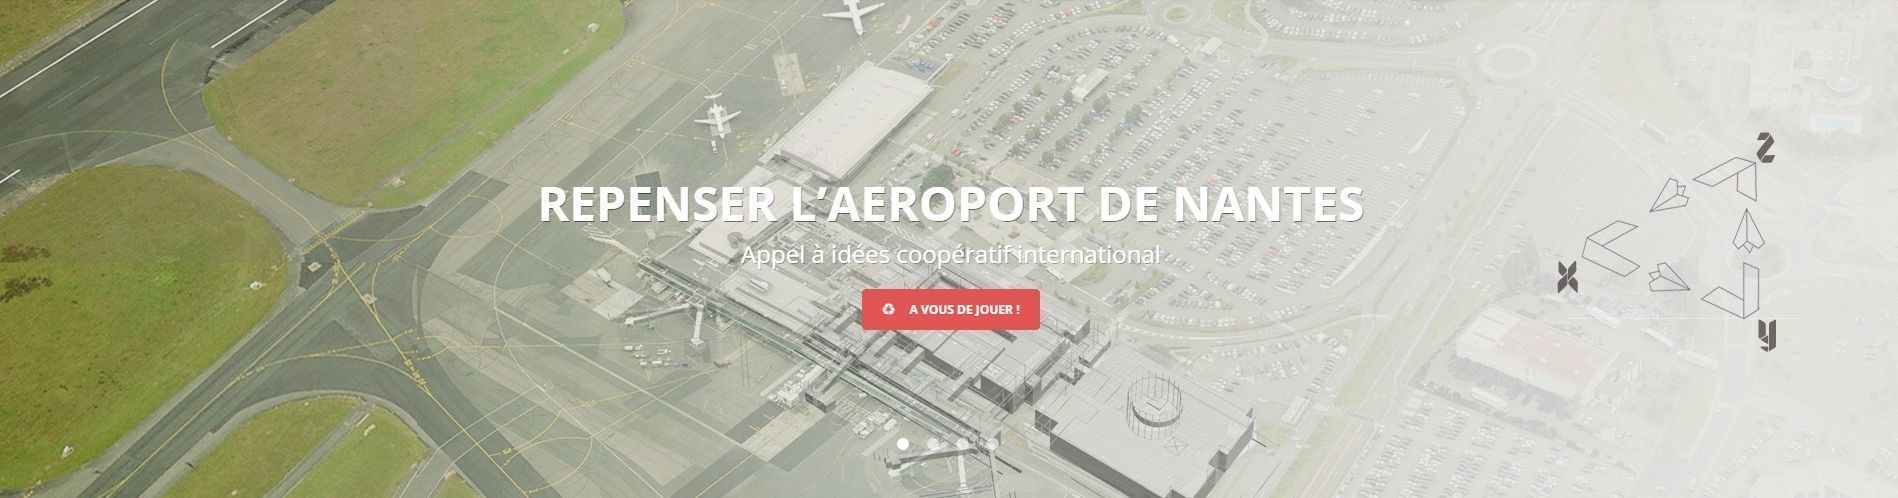 Repenser l\'aéroport de Nantes / Avis d\'appel à idées